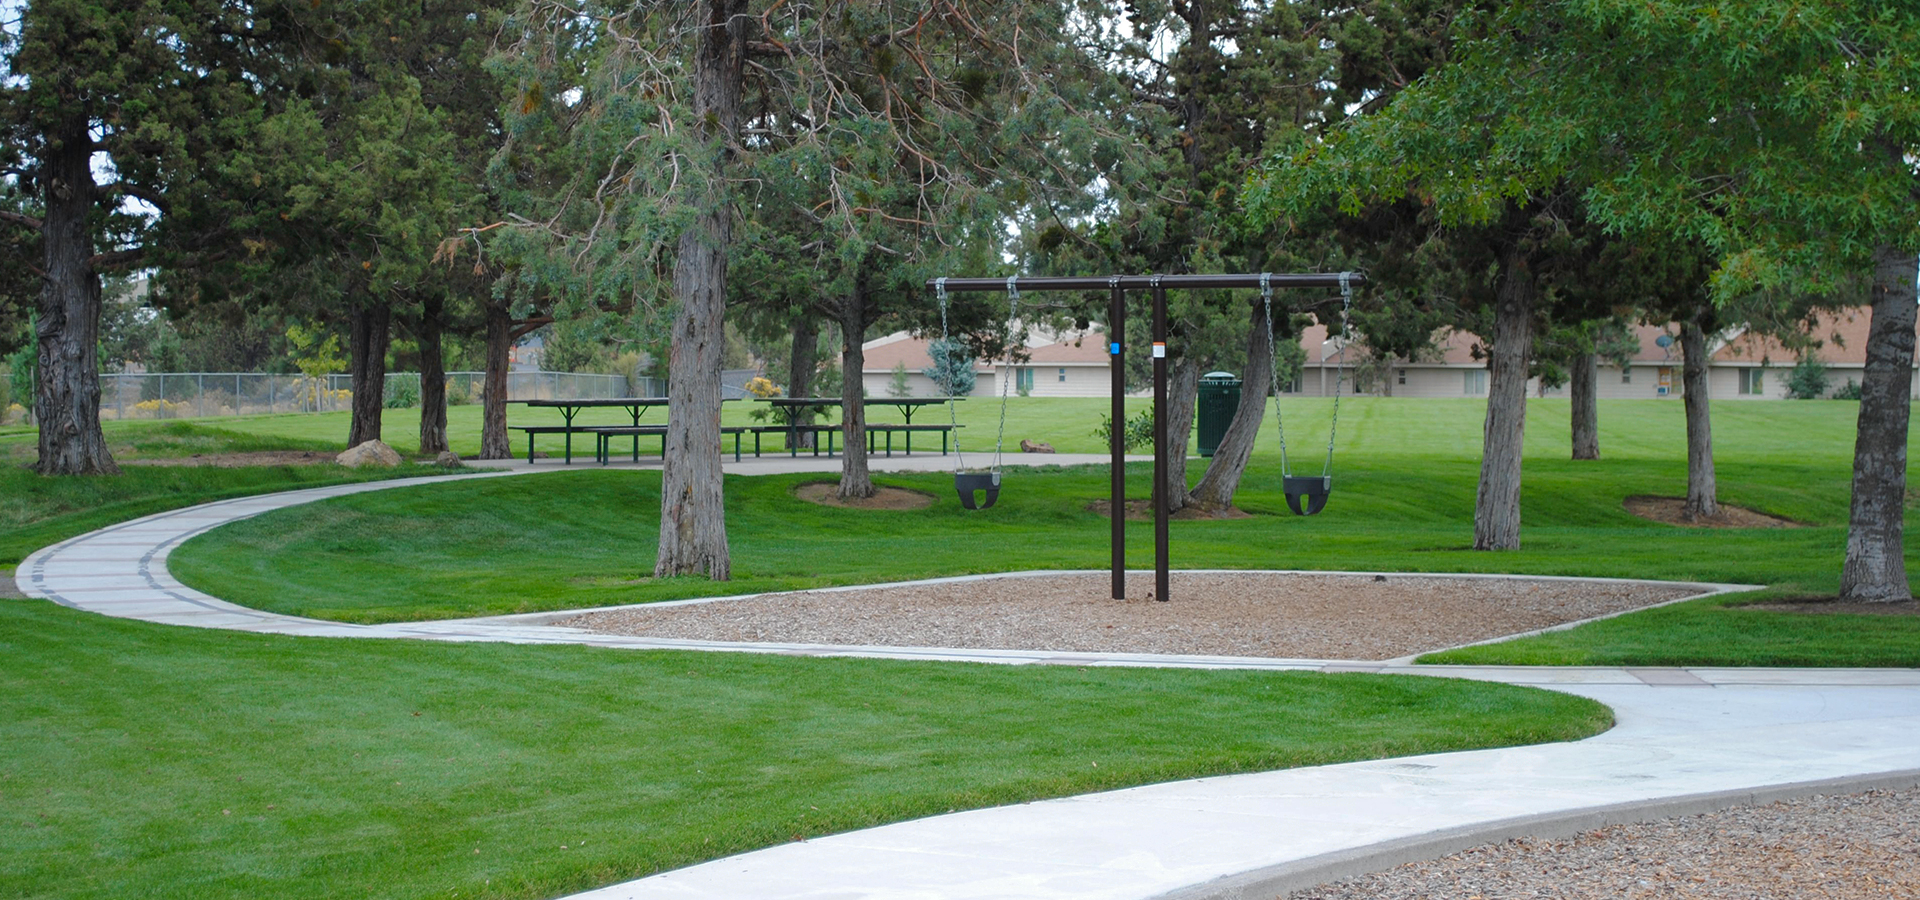 Swings at Kiwanis Park.